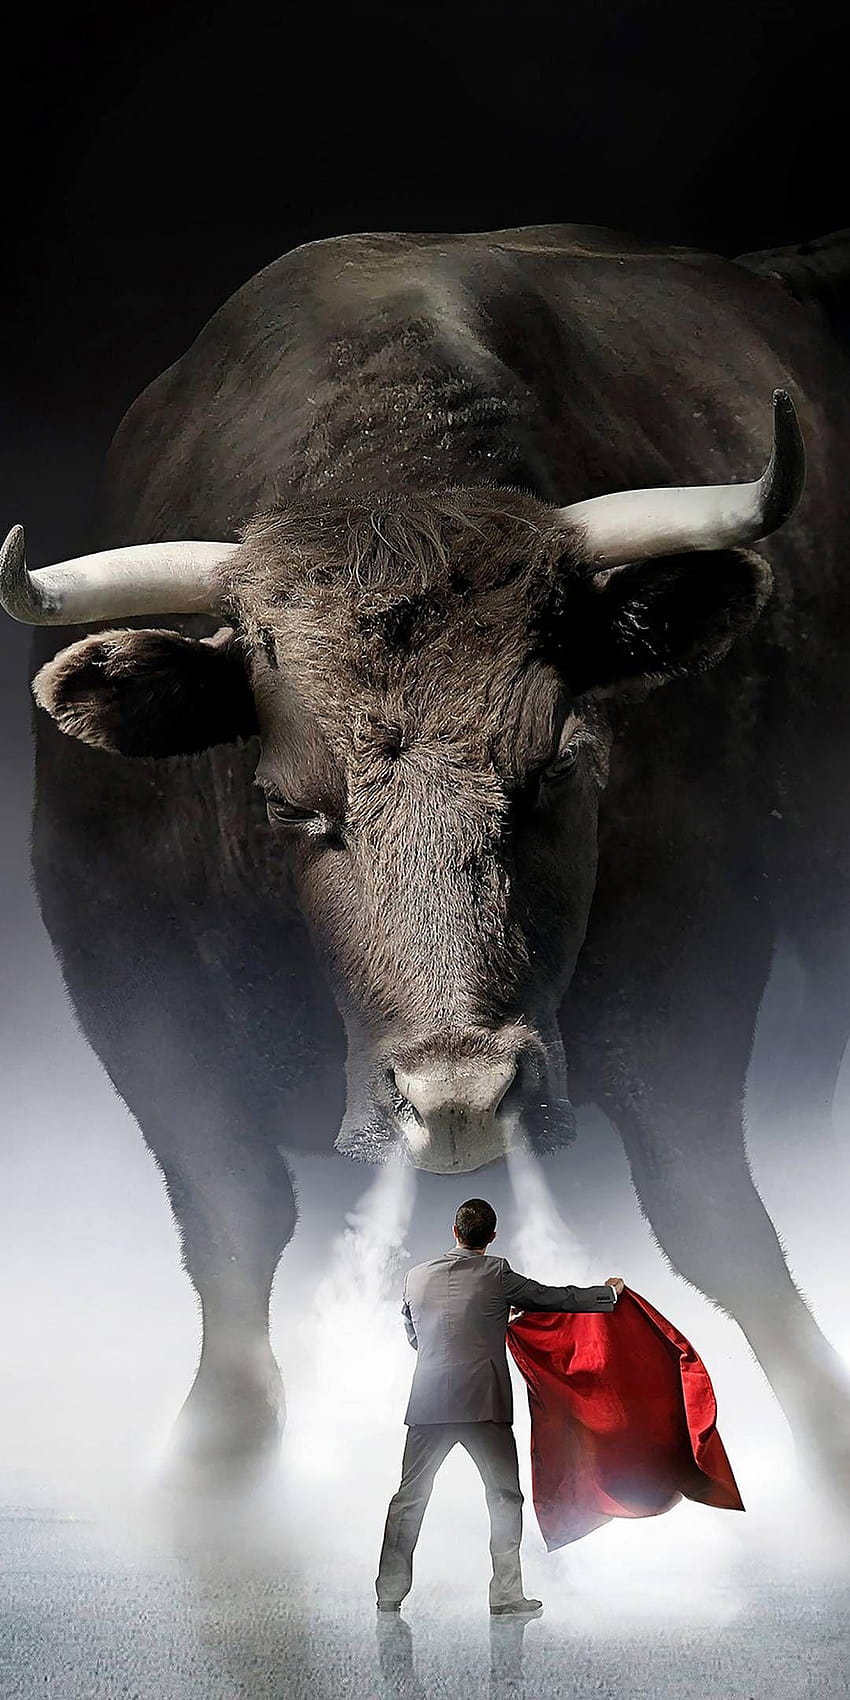 Bull fight in 2019, bull mobile HD phone wallpaper